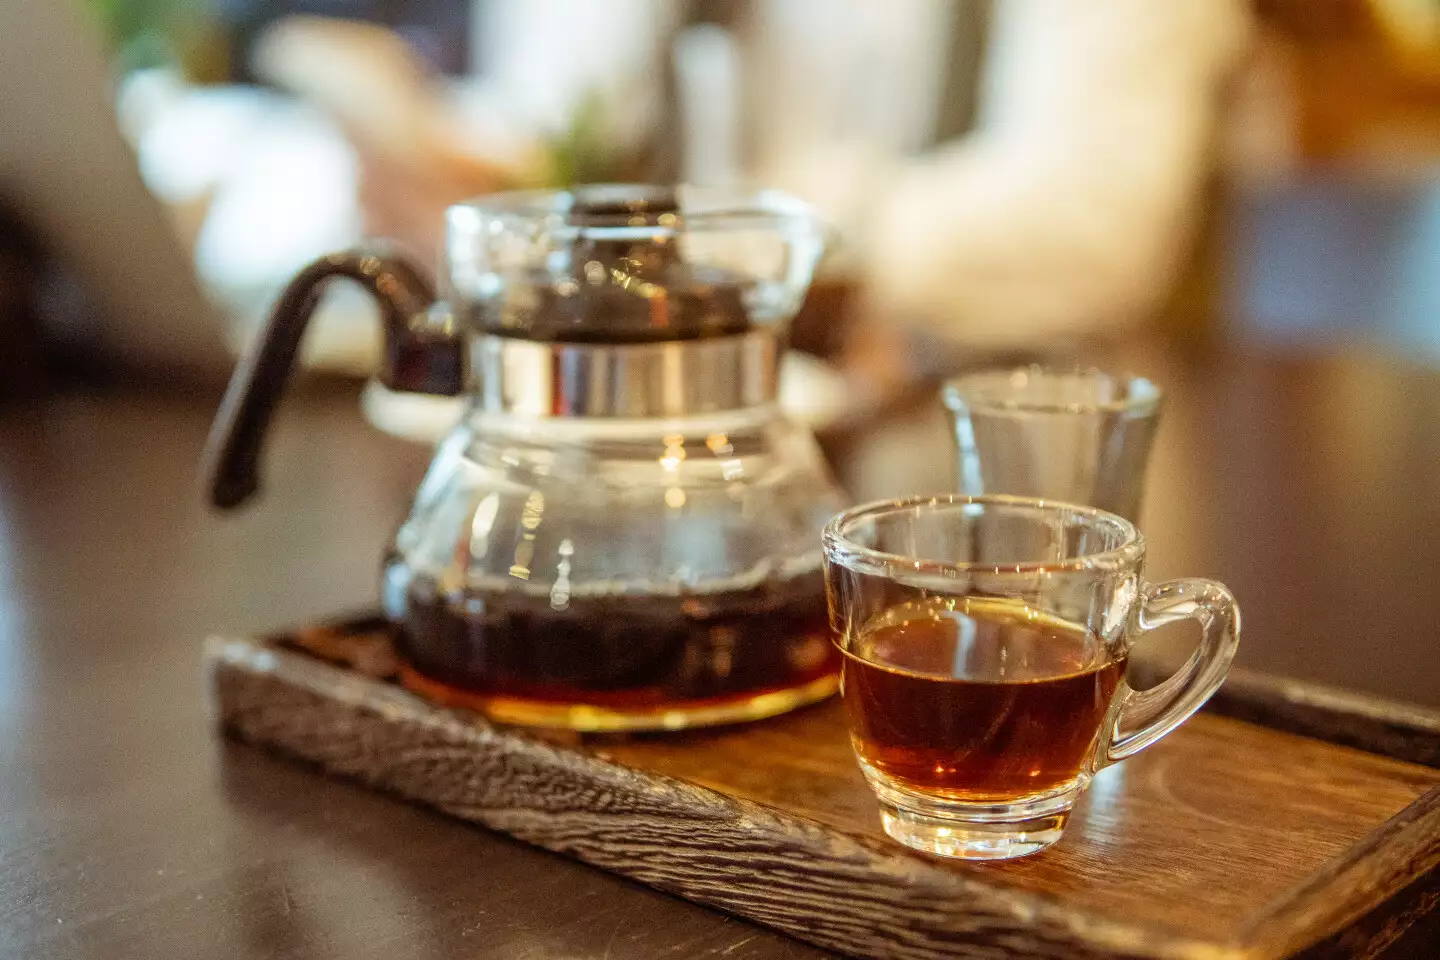 爐鍋咖啡提供的單品咖啡不提供糖、奶；希望能讓顧客體會到，咖啡的原味不只是苦的，而是像水果原汁一樣層次豐富。